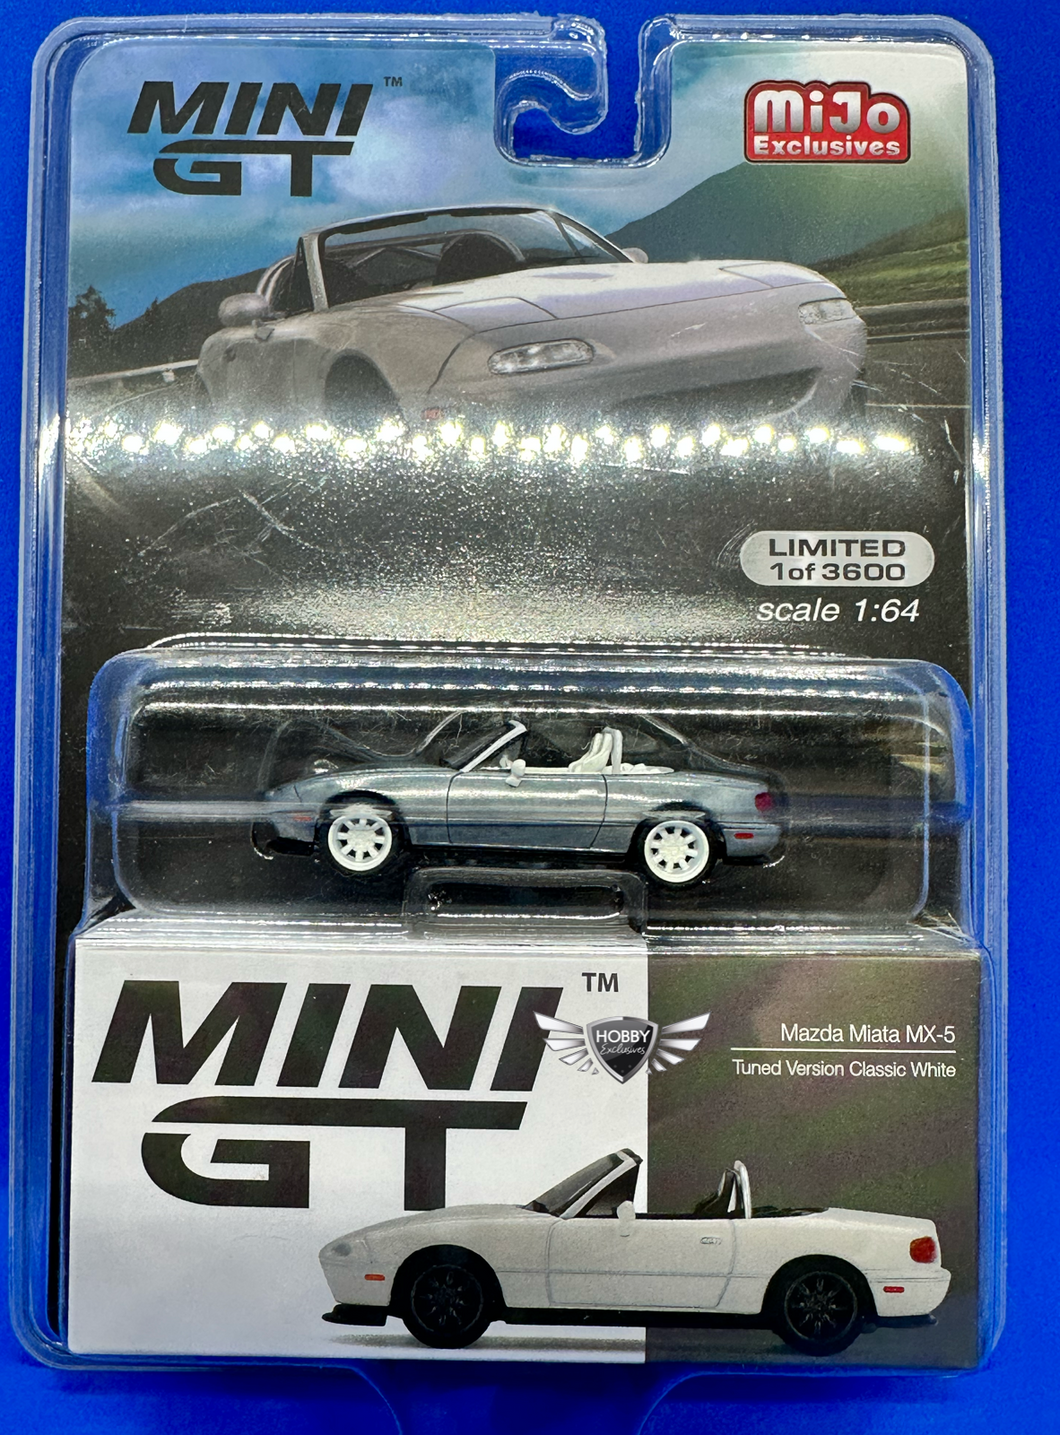 Mazda Miata MX-5 Tuned Version Classic White Mini GT MiJo Exclusive CHASE